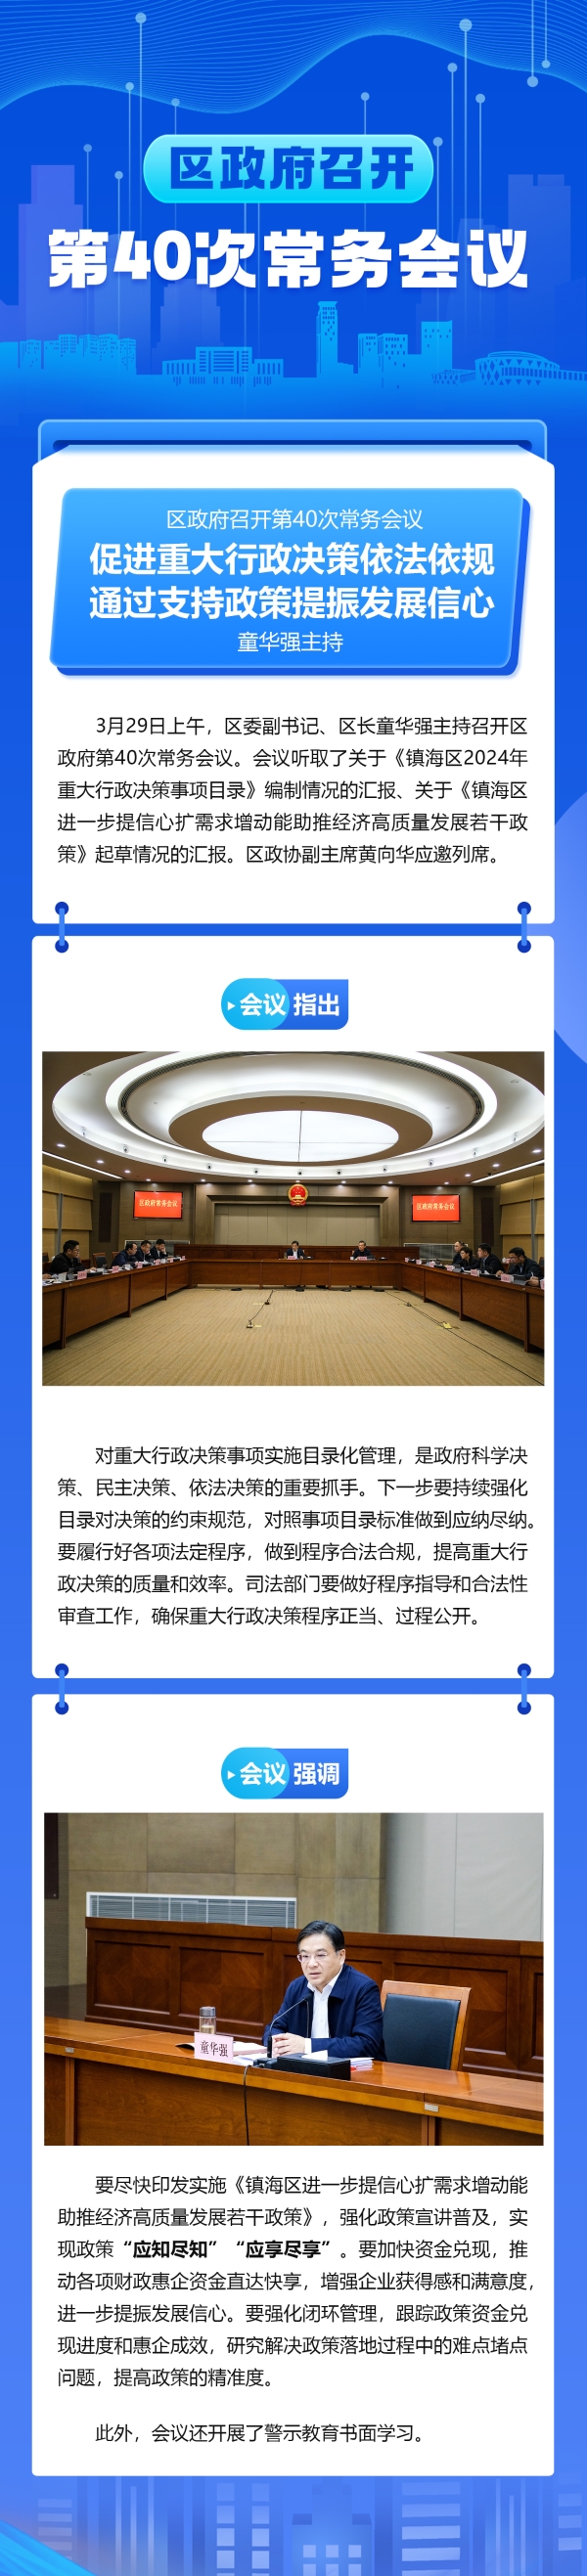 2024年3月29日镇海区人民政府第40次常务会议图解